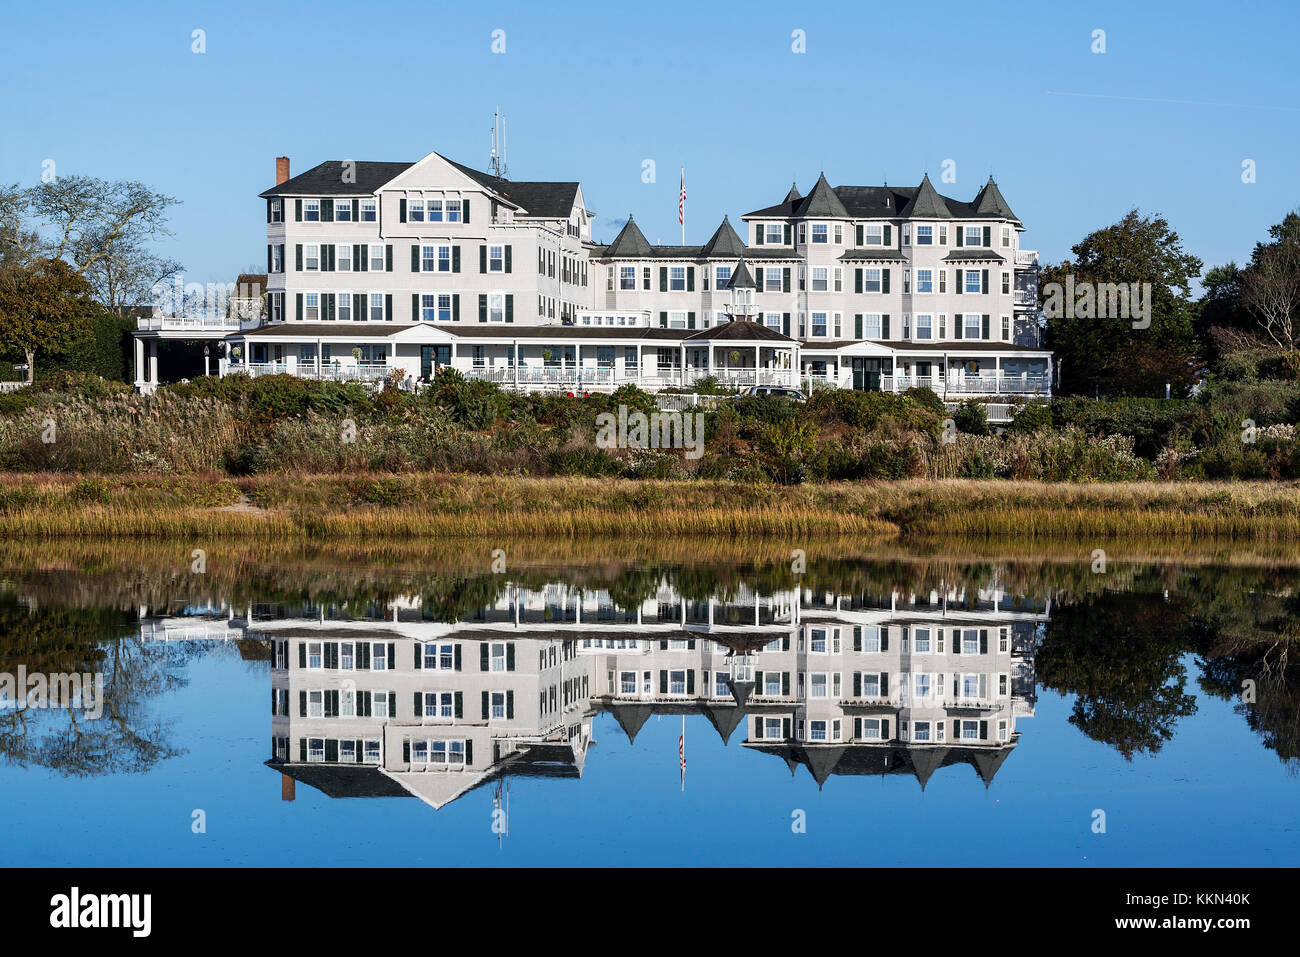 Harbor View Hotel, Edgartown, Martha's Vineyard, Massachusetts, USA. Stock Photo